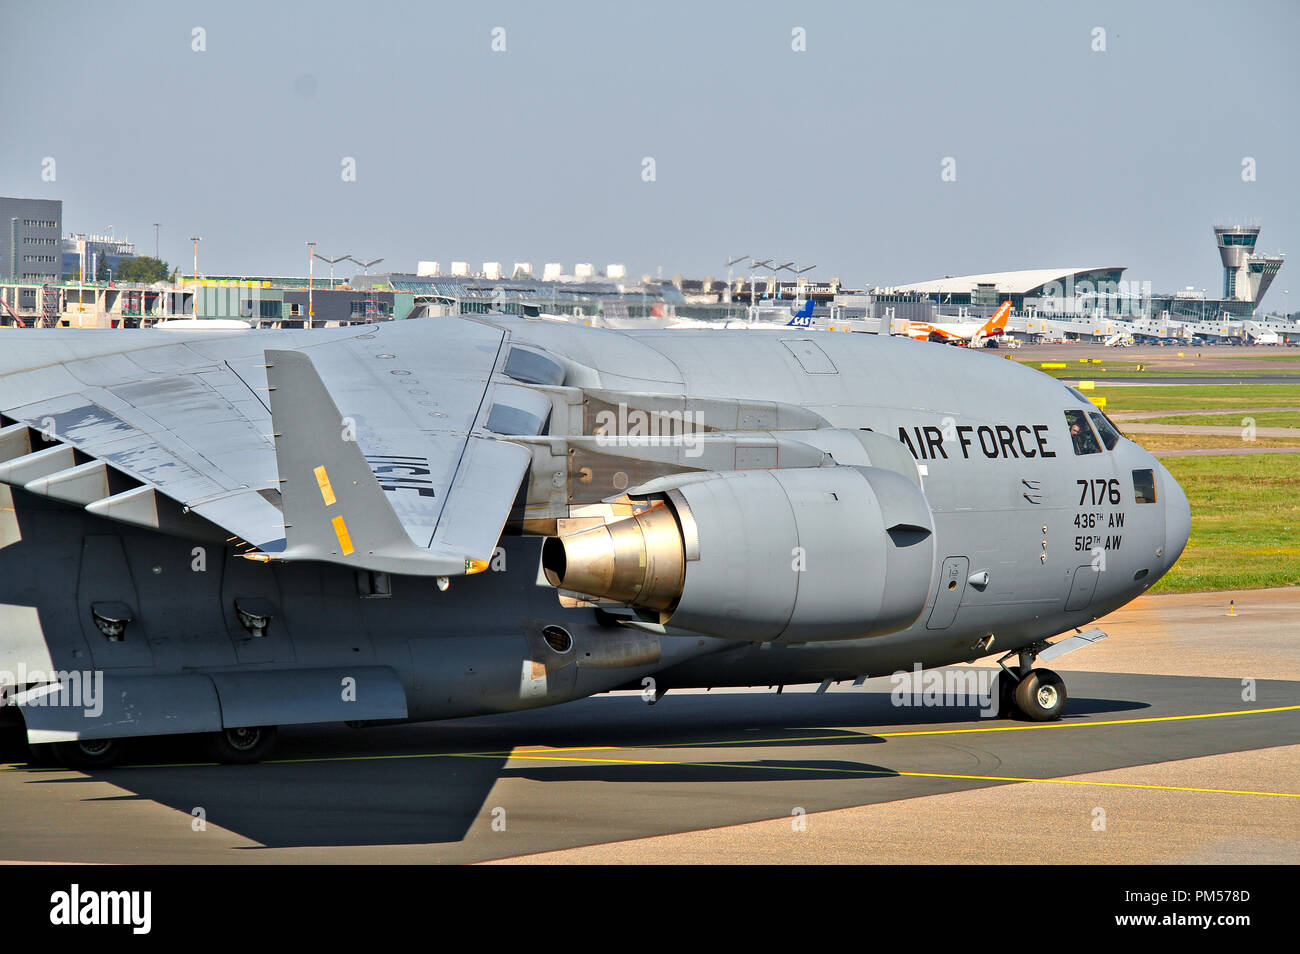 US Air Force cargo aereo Boeing C17 in aeroporto Helsinki-Vantaa al momento della riunione dei presidenti. 17.07.2018 Vantaa, Finlandia. Foto Stock